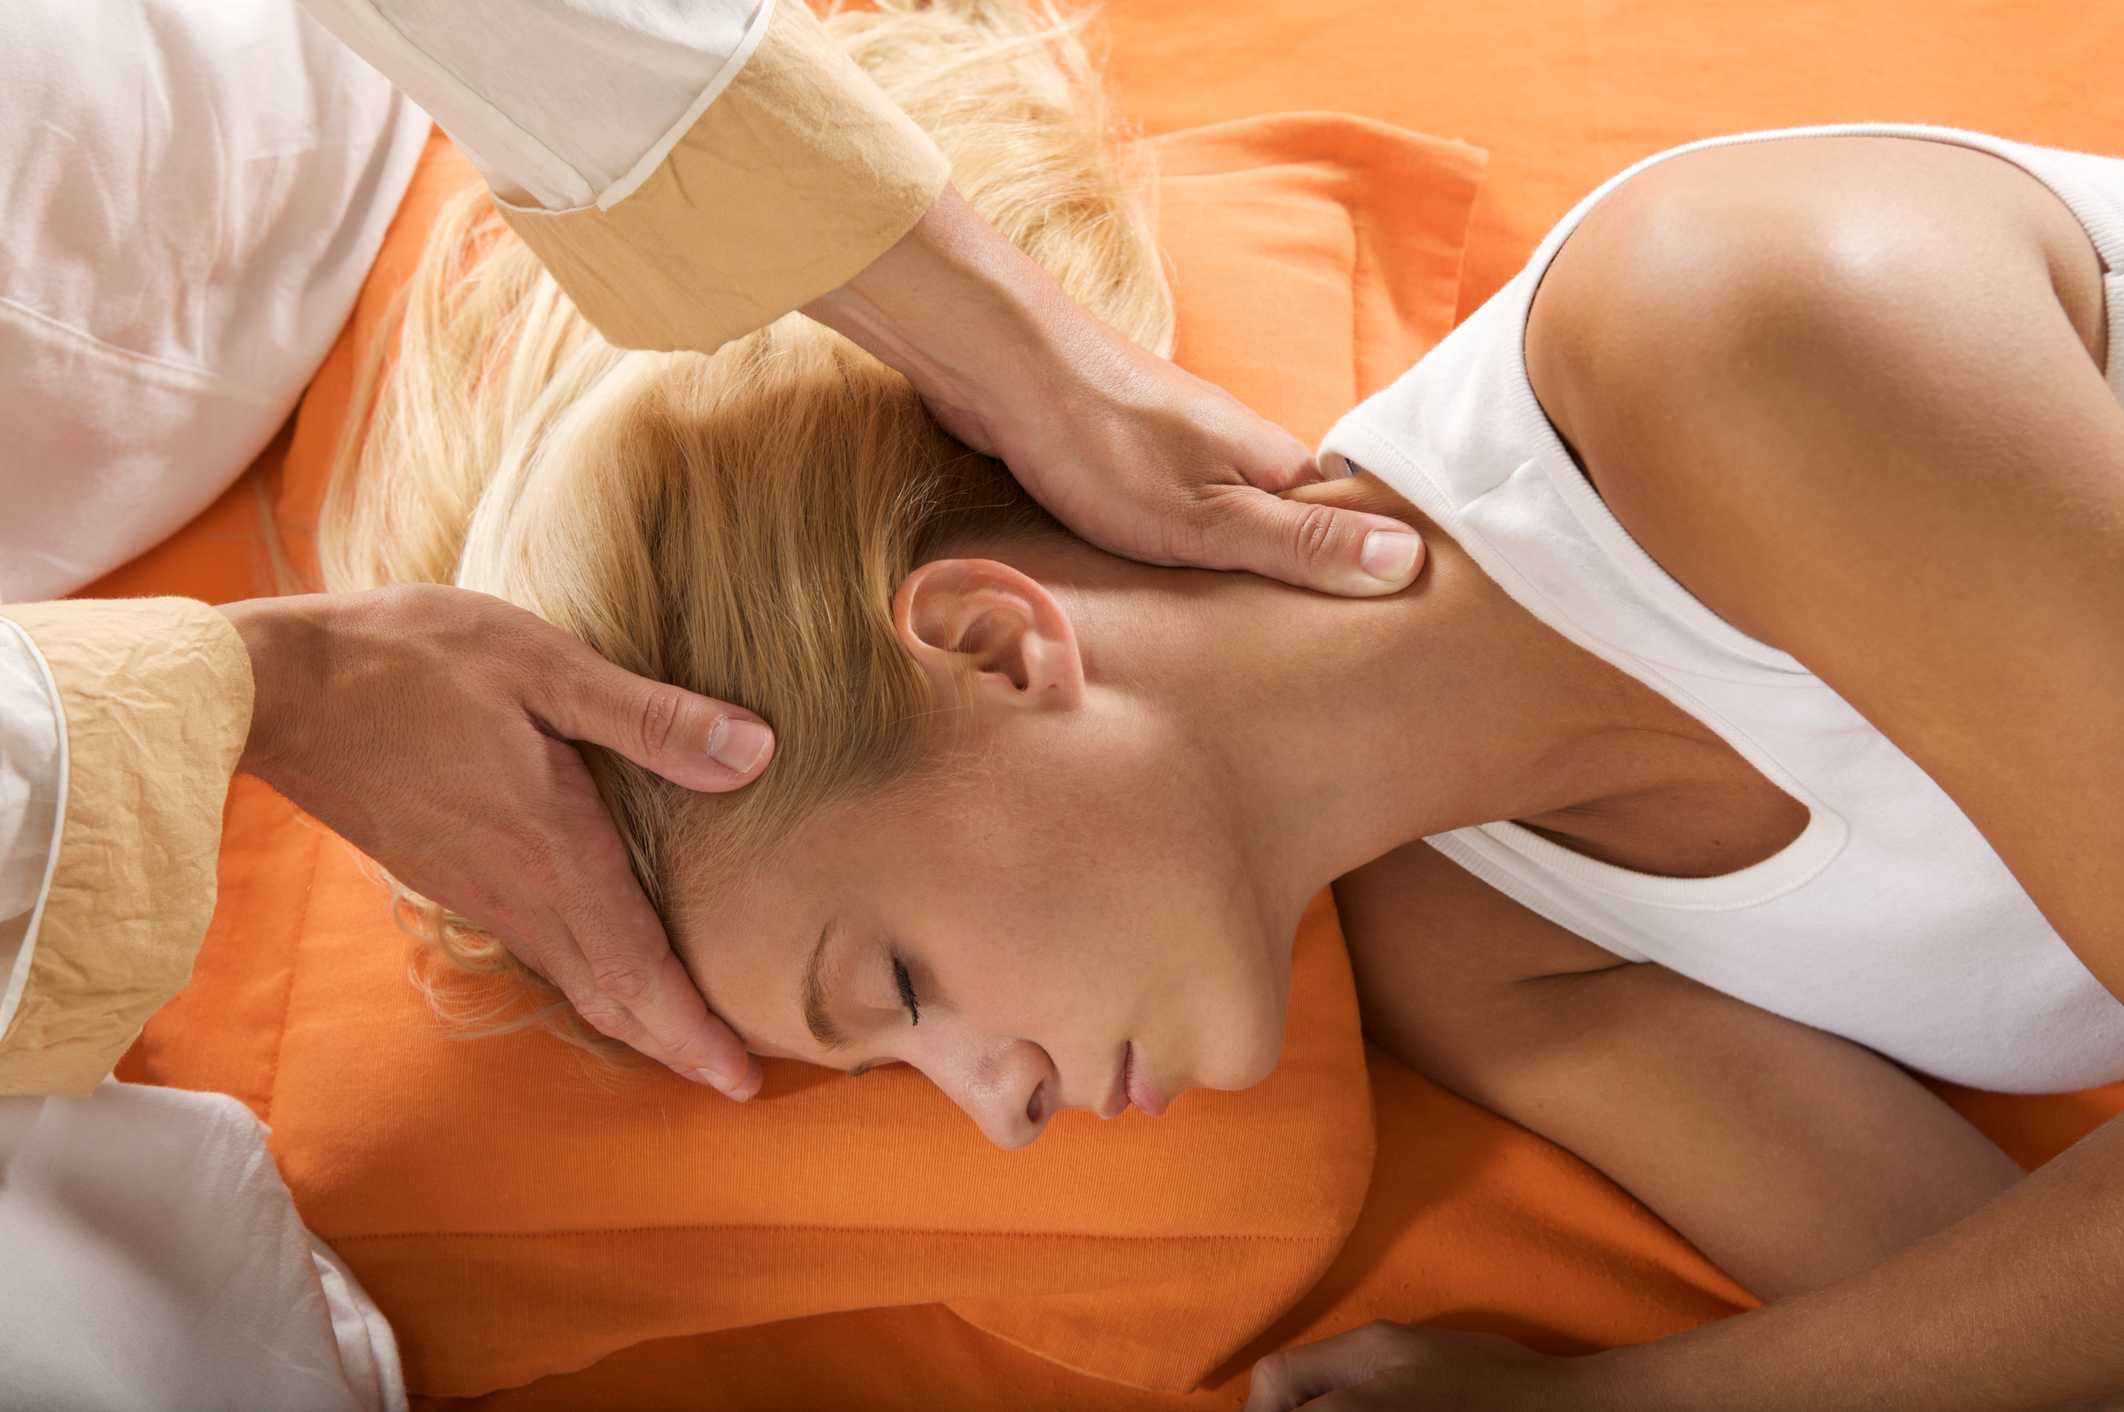 Junge Frau mit blonden hochgesteckten Haaren liegt mit ihrer rechten Seite auf dem Boden und bekommt eine achtsame KopfM massage von einem Mann mit sanften Händen